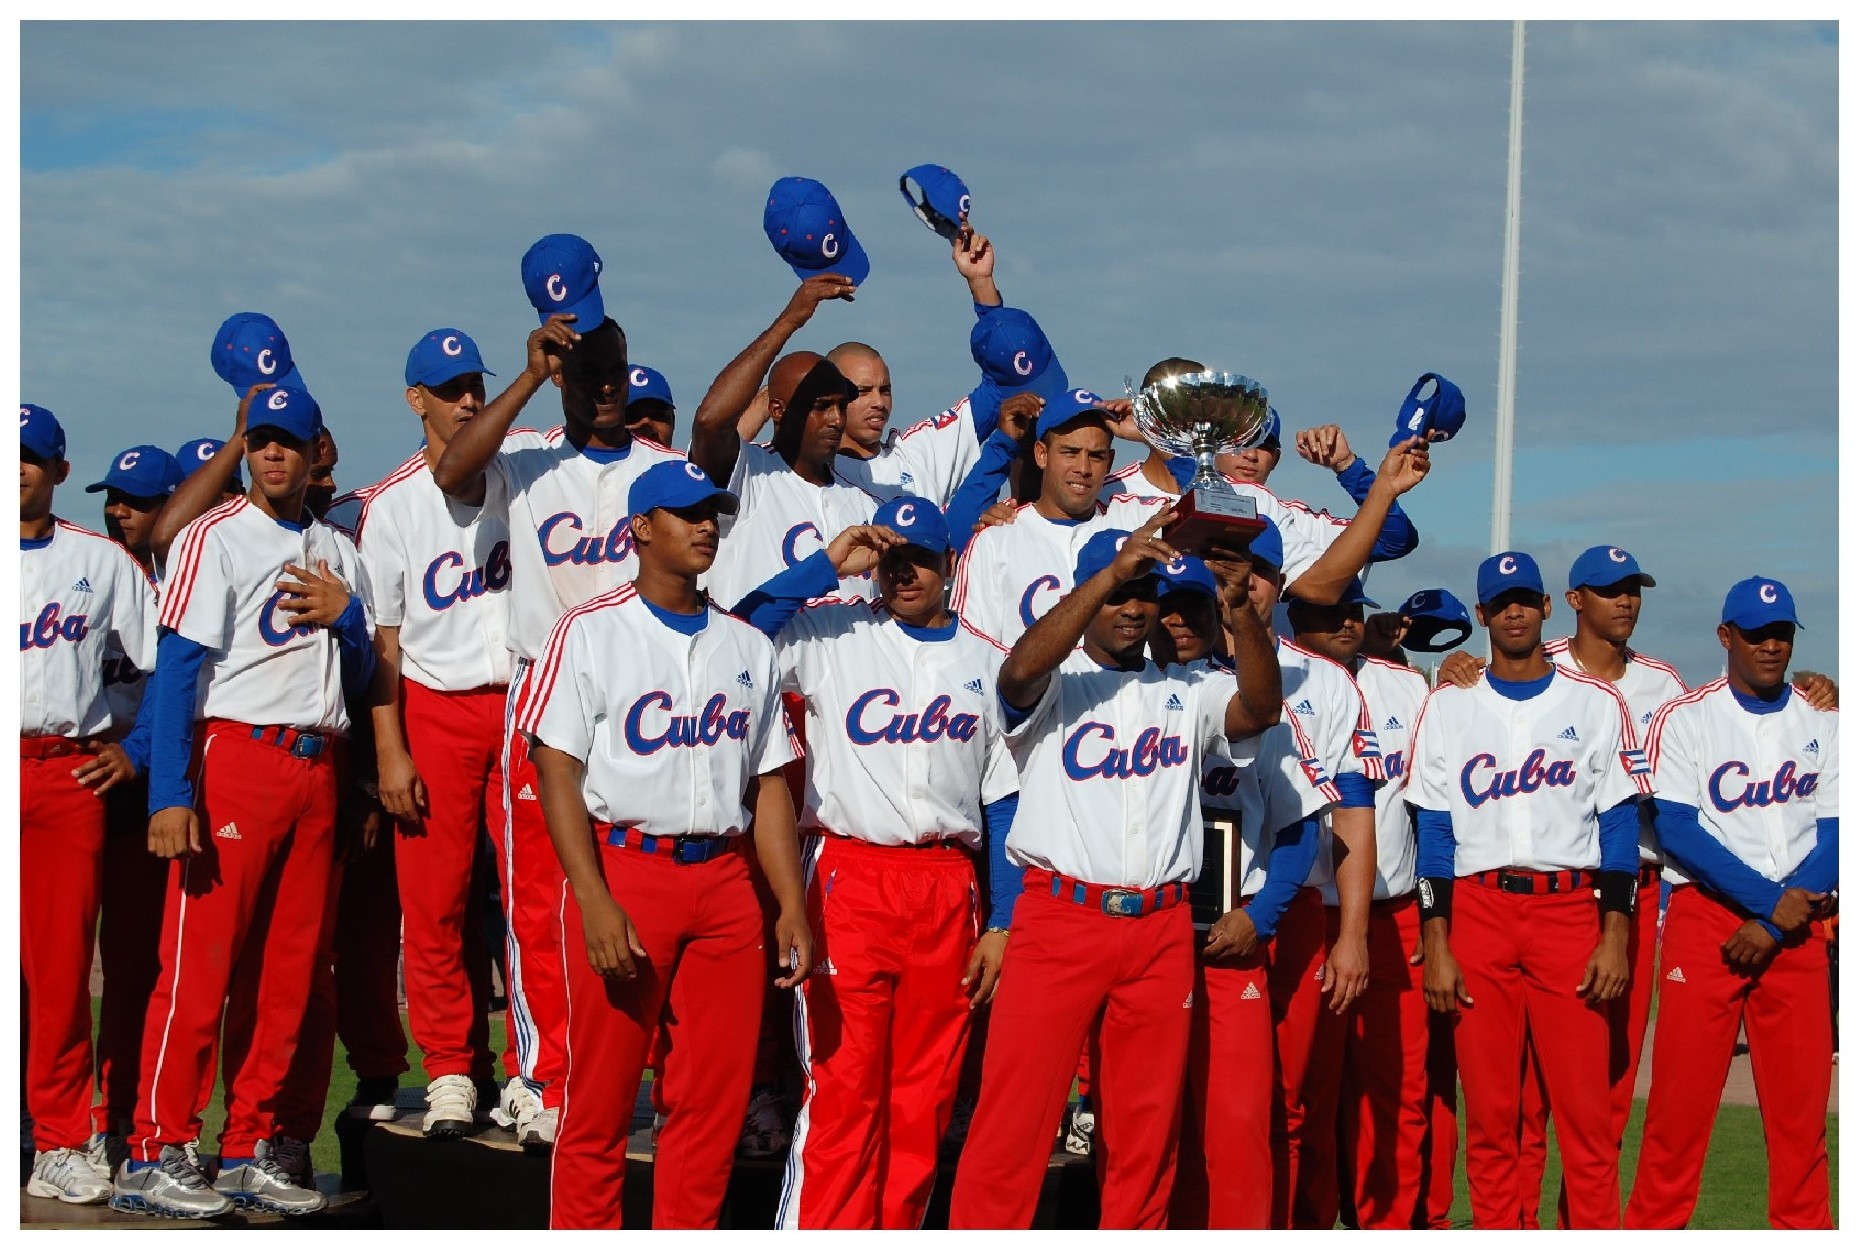 Wake Up Cuba Baseball Fans! - Havana Times